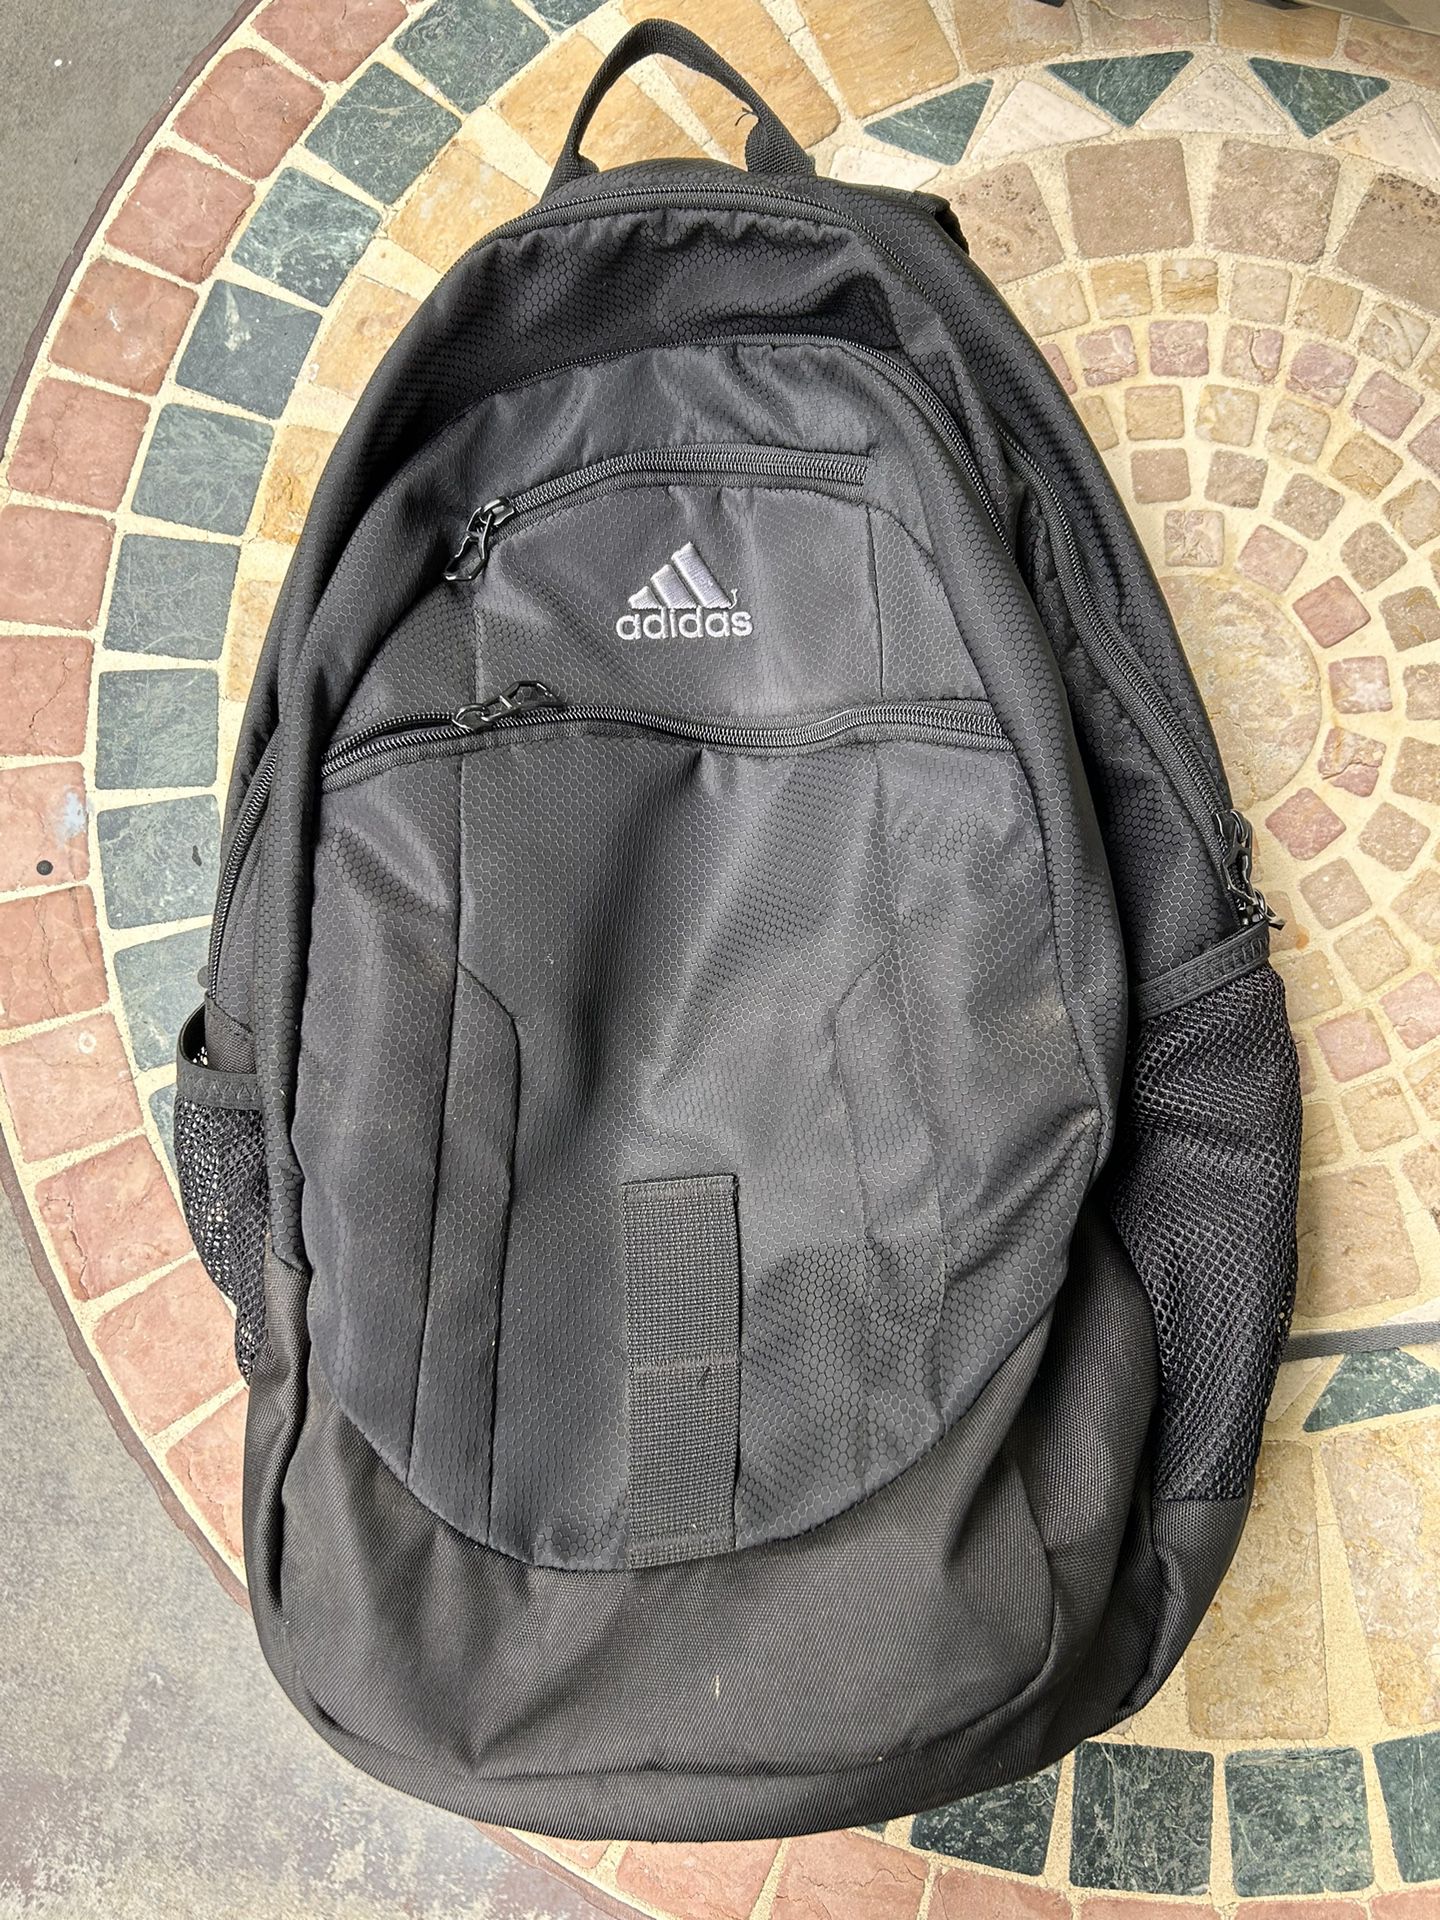 Adidas Foundation 6 Backpack